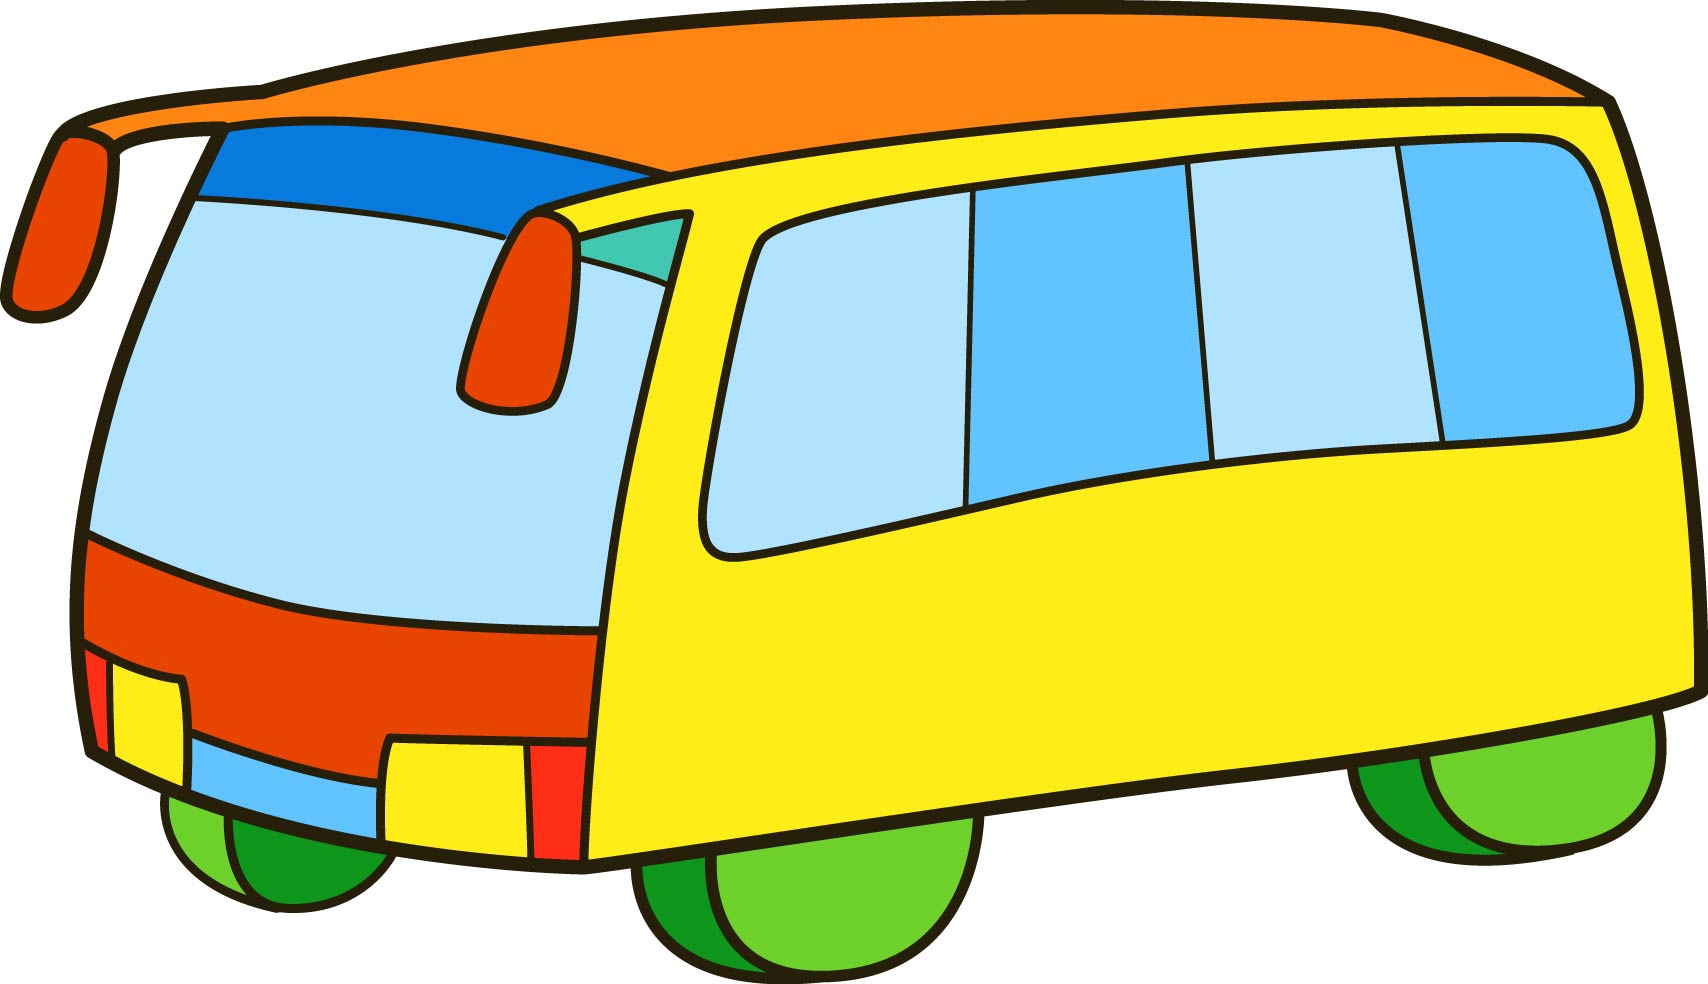 Раскраска автобус с большими зеркалами формата А4 в высоком качестве